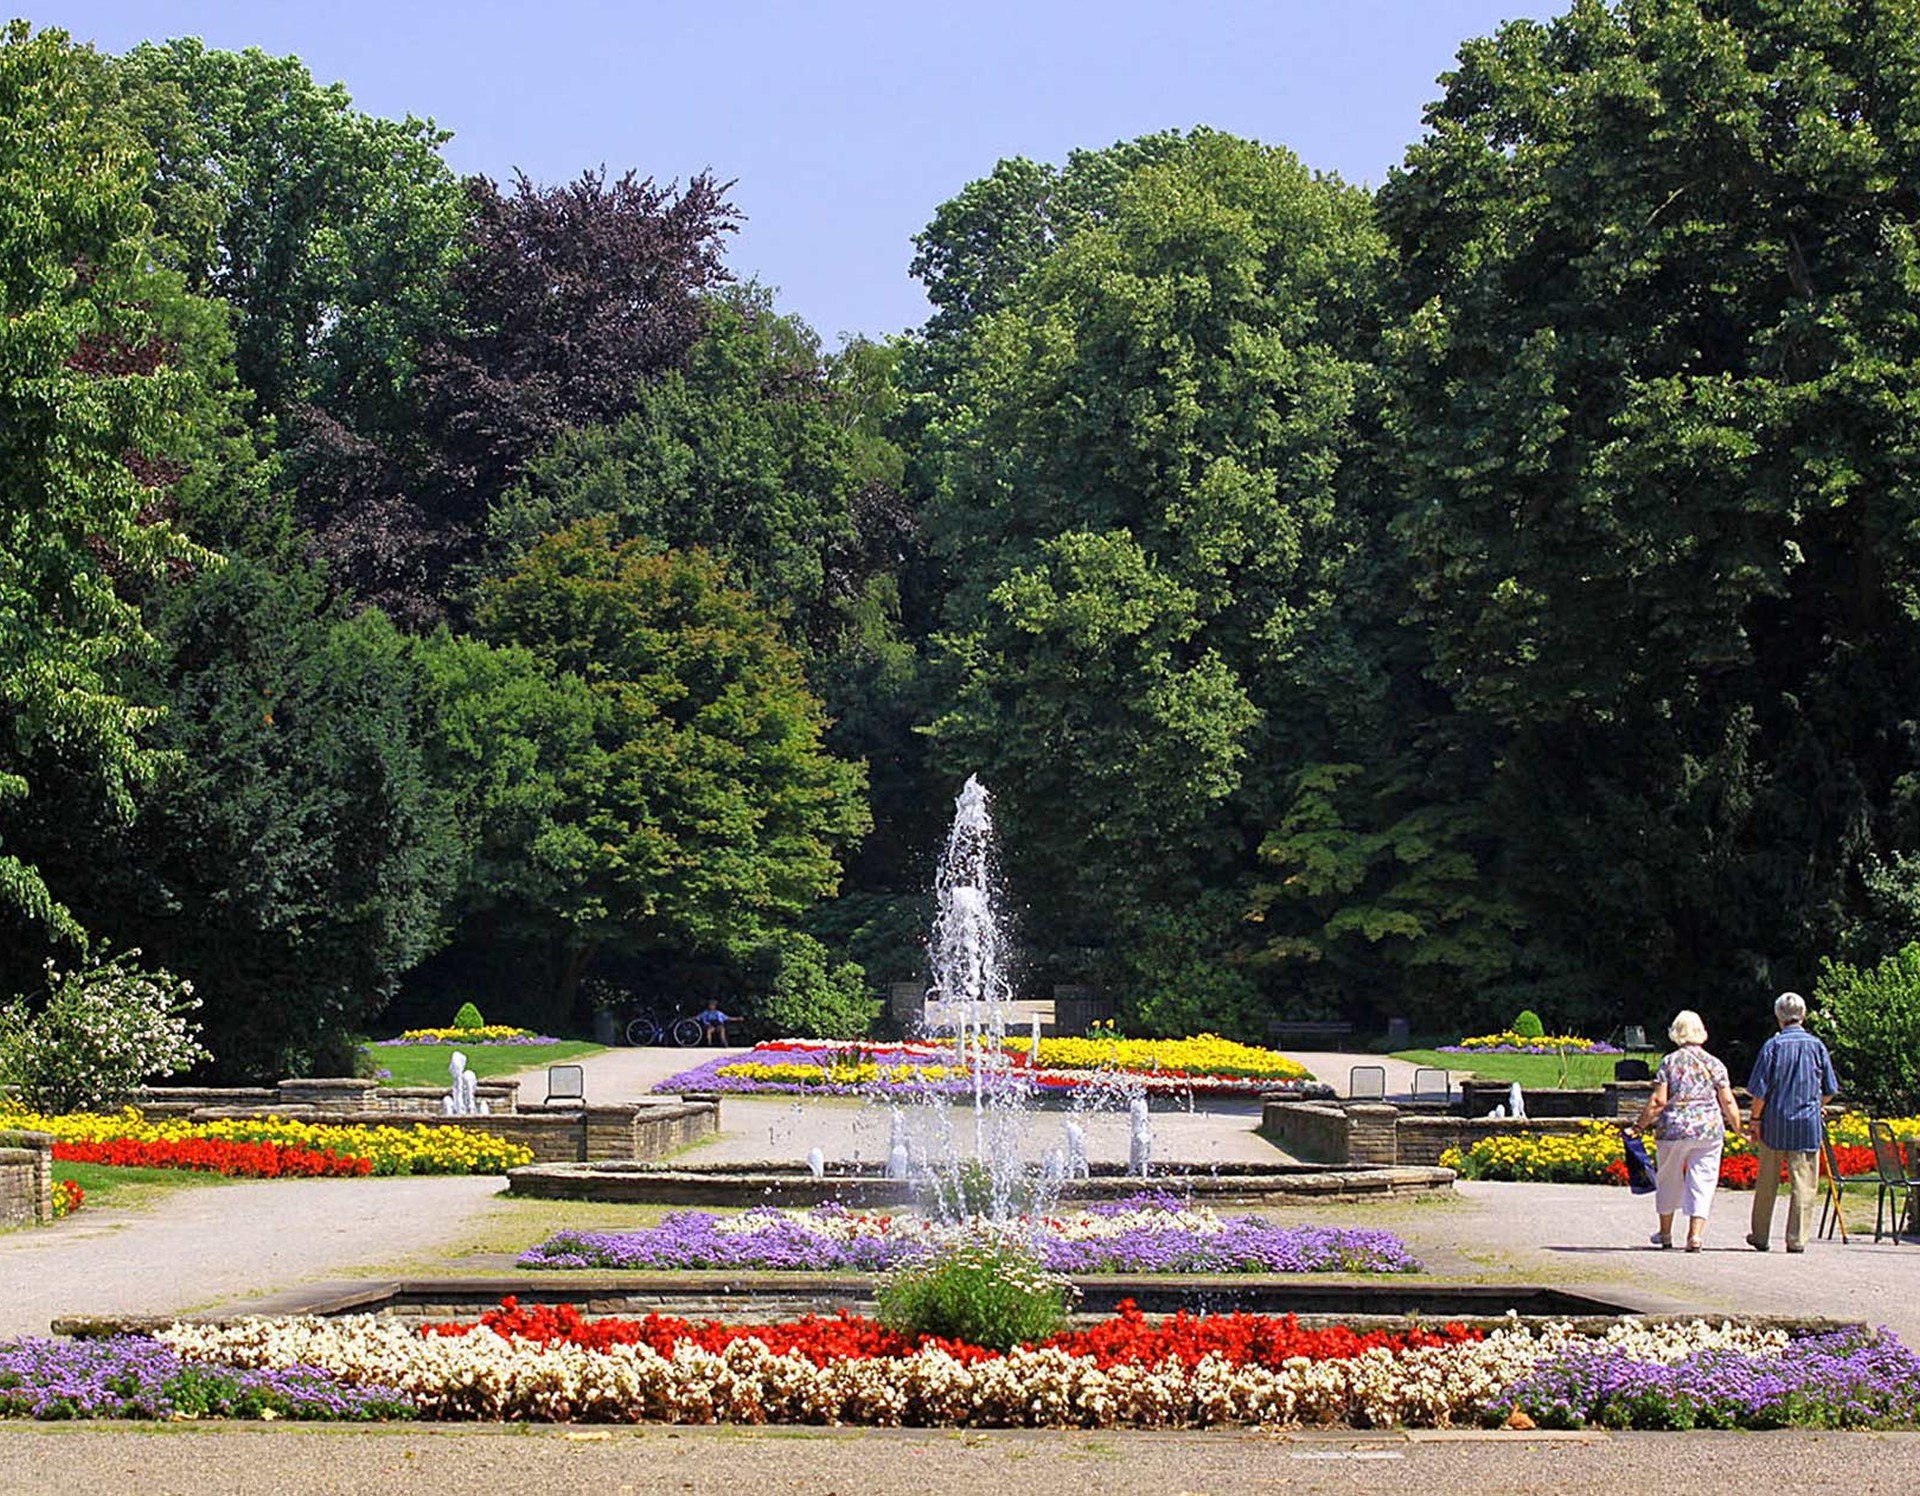 Mehrere Springbrunnen im Stadtgarten Gelsenkirchen. Drum herum sind Blumenbeete angelegt.